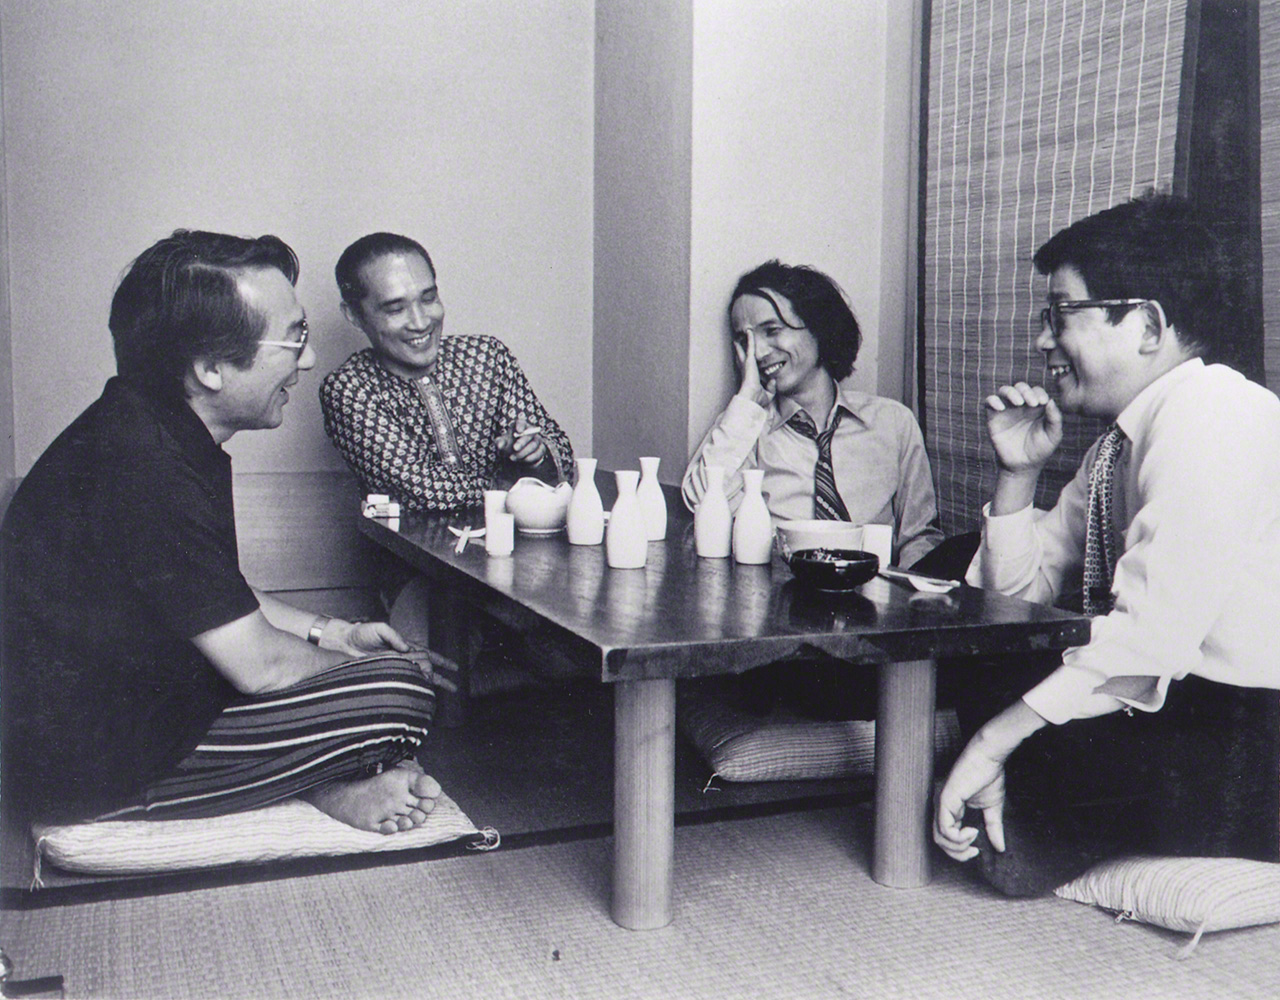 Charlando amistosamente con sus grandes amigos. De izquierda a derecha, el compositor Yuasa Jōji, el poeta Tanikawa Shuntarō, Takemitsu y el escritor Ōe Kenzaburō. Fotografía tomada en los años 70.